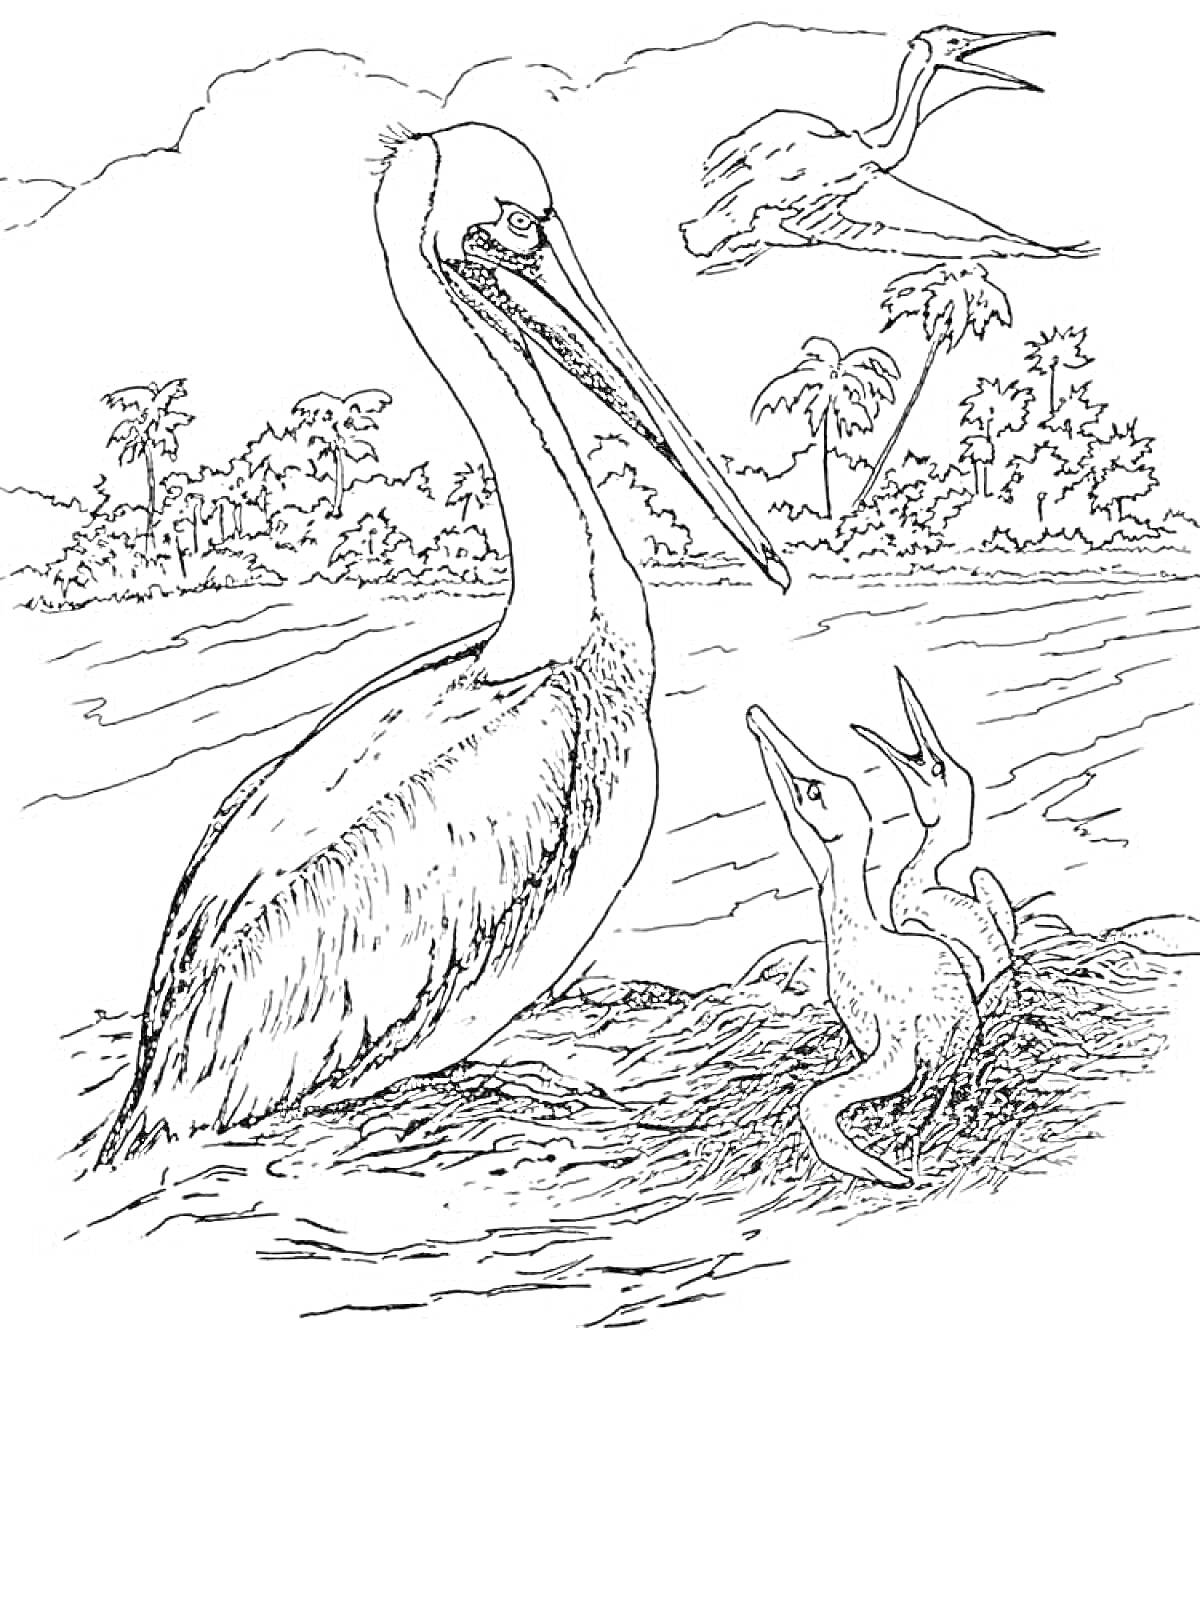 Раскраска Пеликан с птенцами у воды и летящий пеликан на фоне деревьев